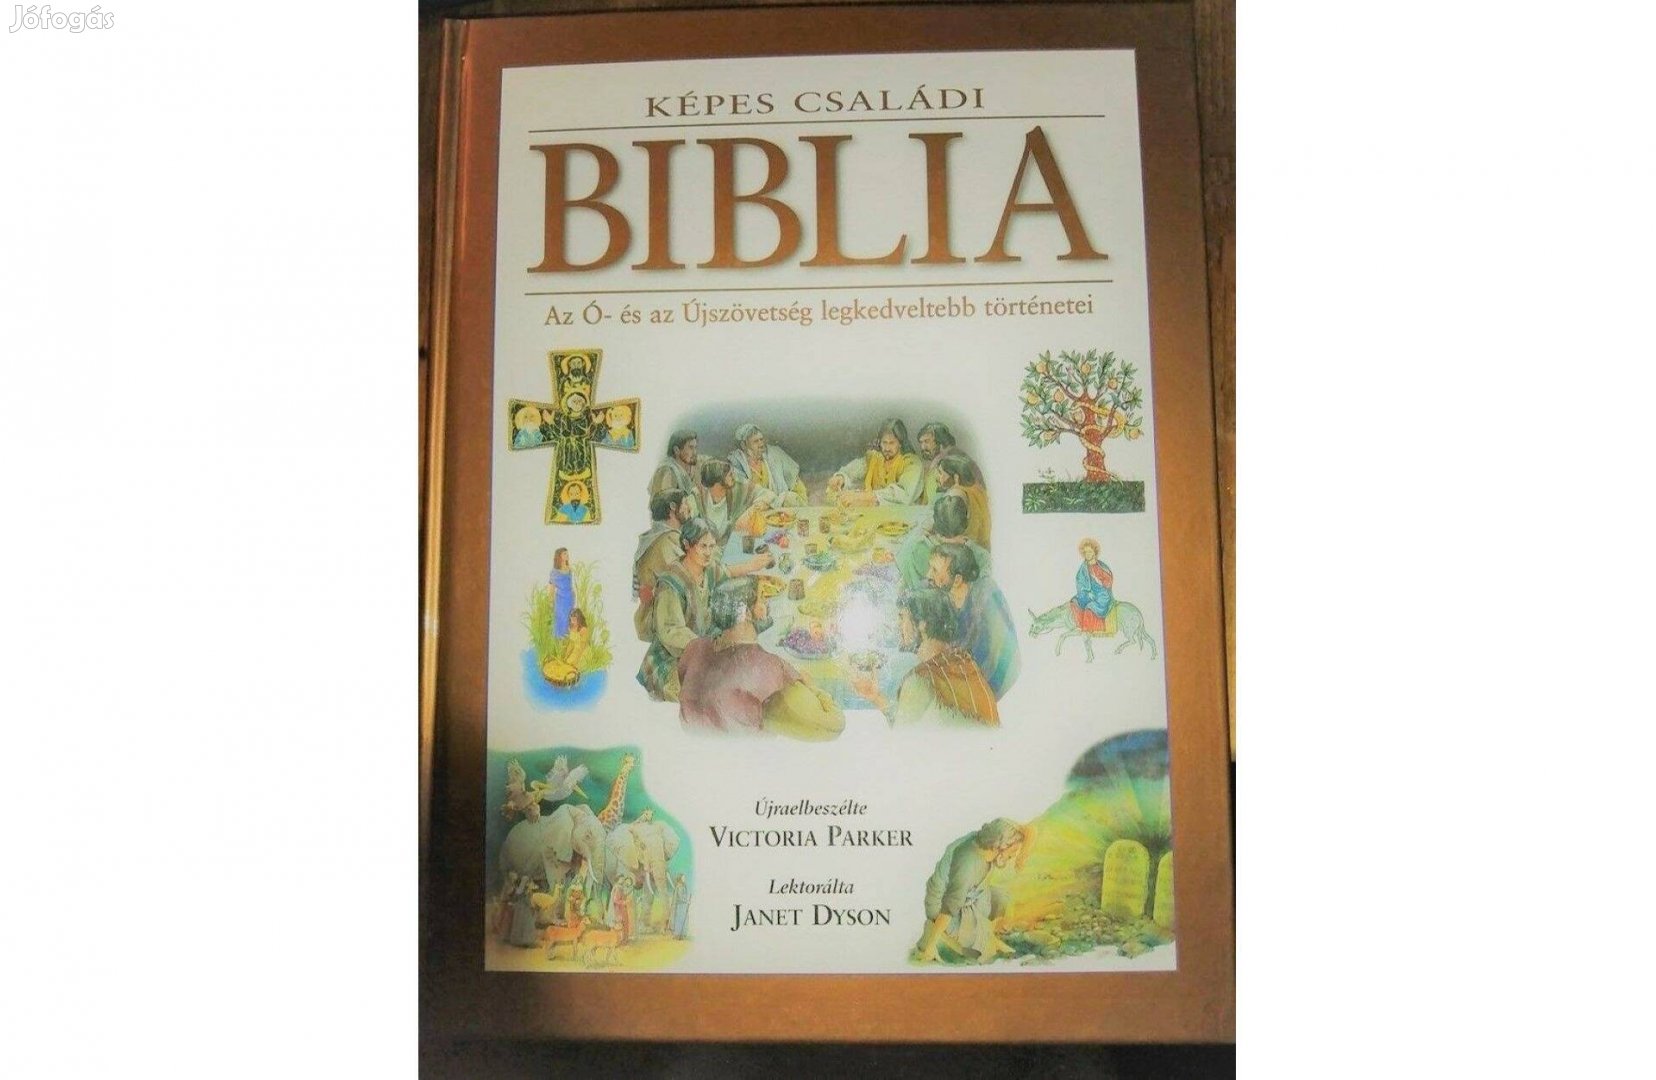 Képes családi Biblia - Az Ó- és az Újszövetség legkedveltebb történeti